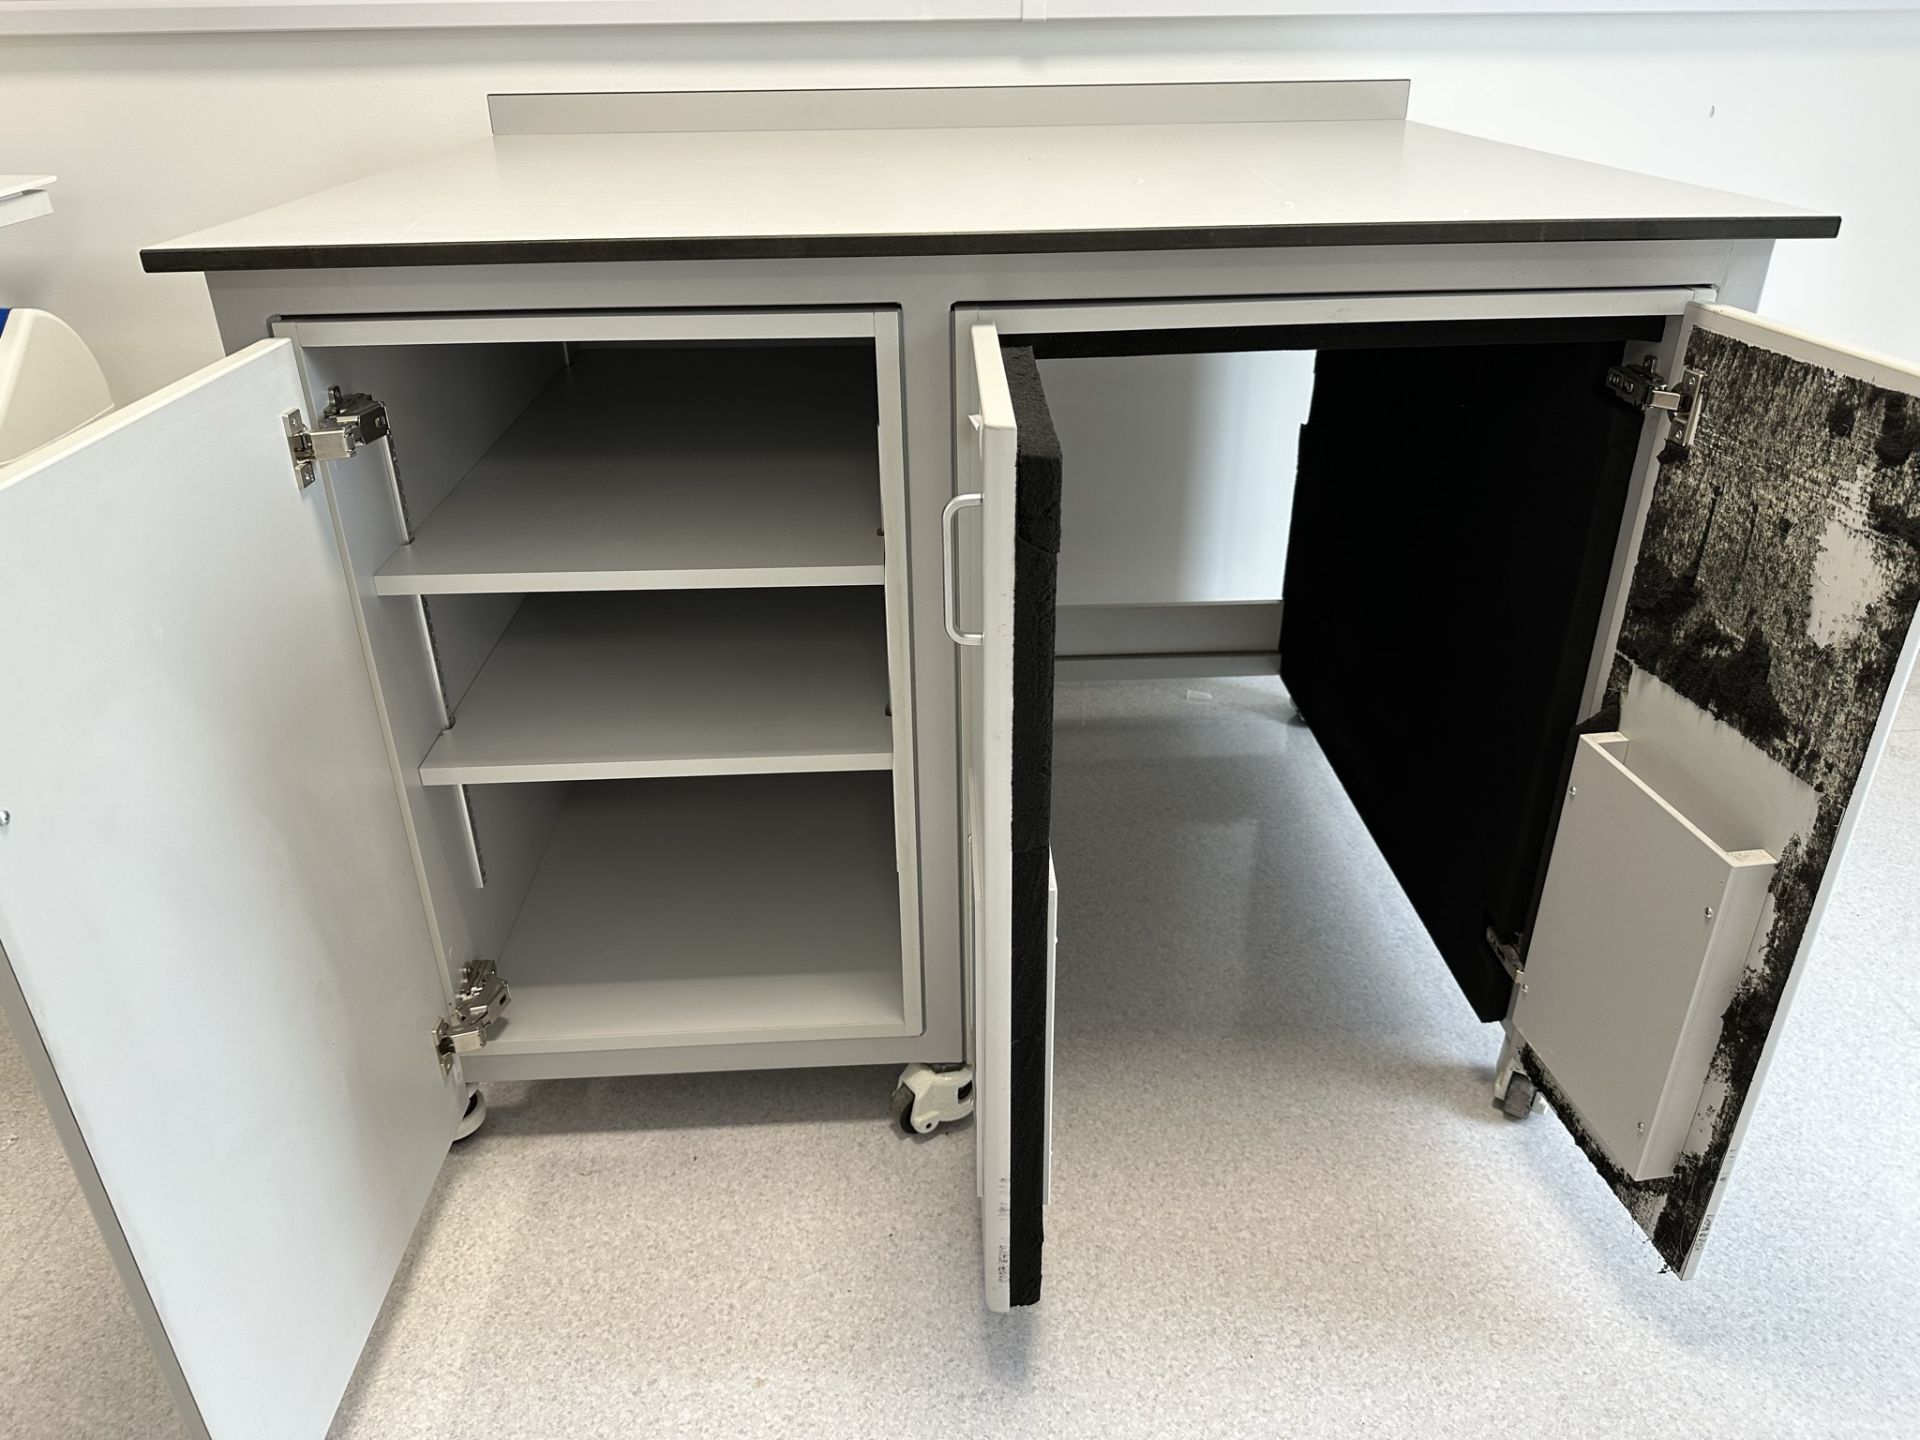 Mobile Laboratory Workbench w/ 3 Doors - Image 2 of 4